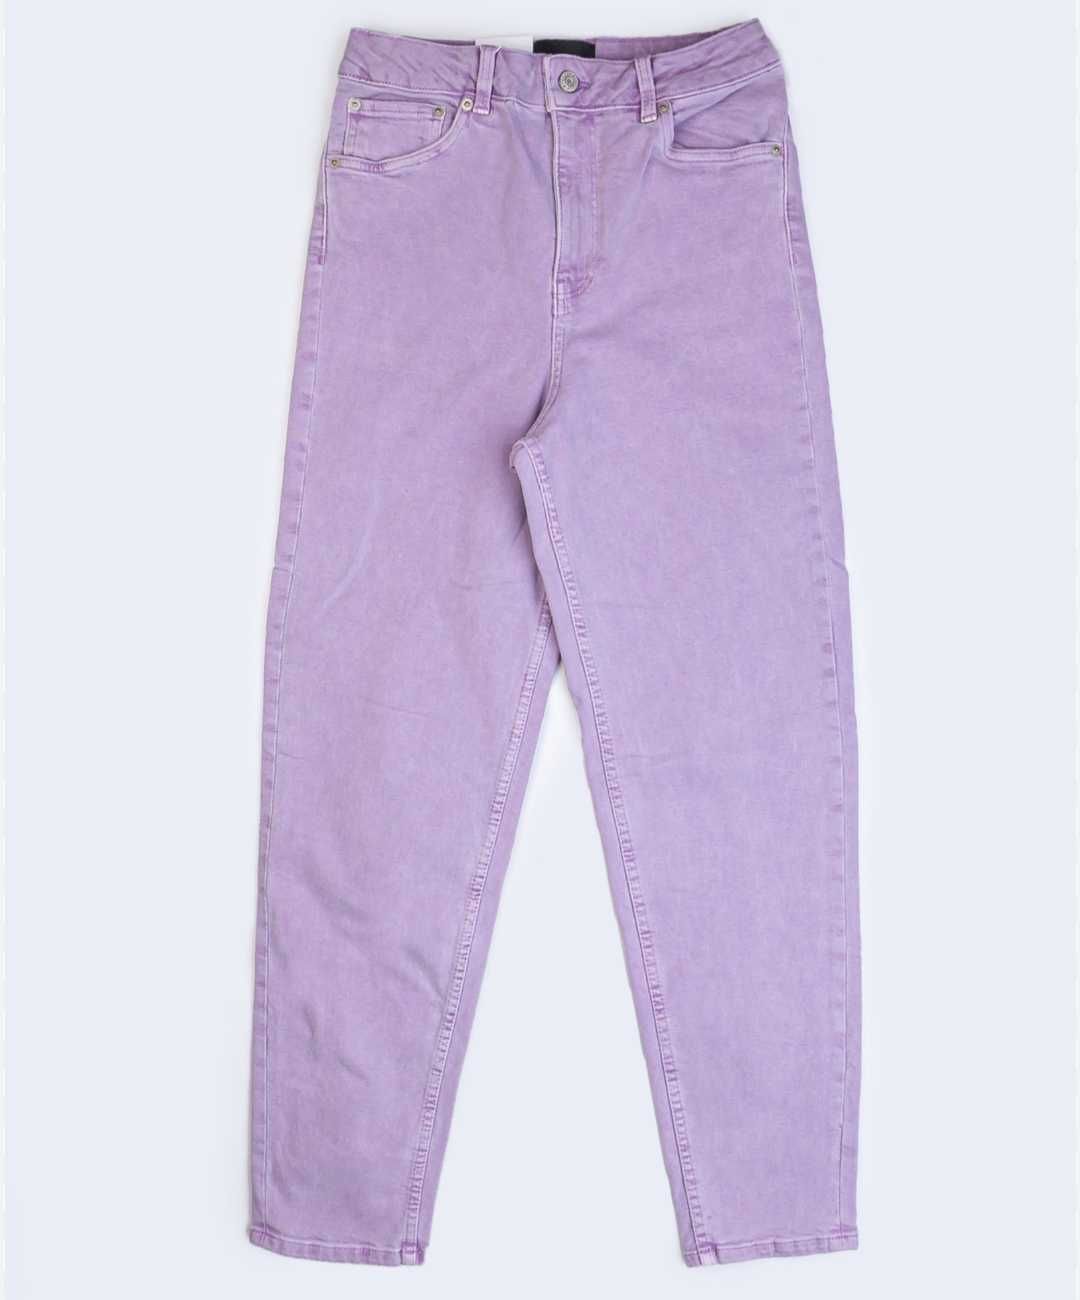 14 размер обалденные сиреневые джинсы